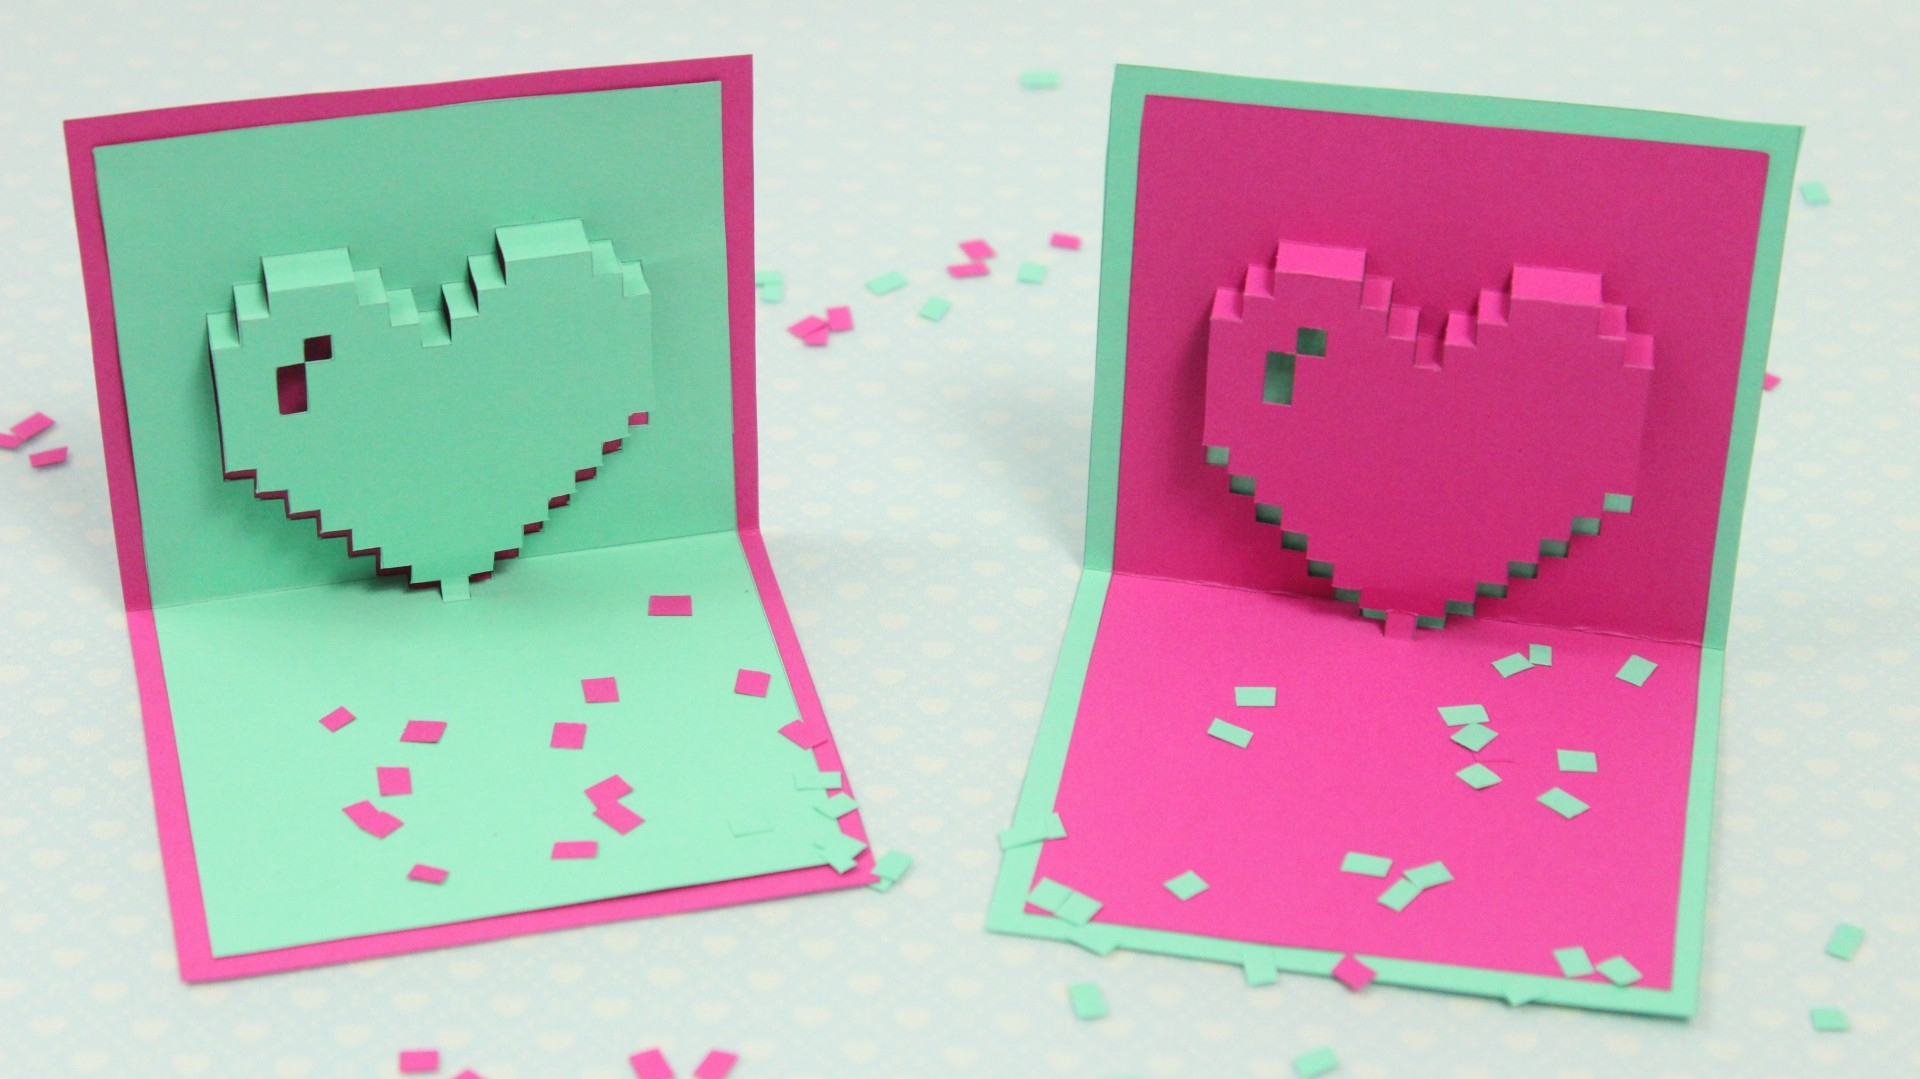 Campbellslifelongblog: Basteln Mit Papier Pop Up Karte Basteln Regarding Pixel Heart Pop Up Card Template